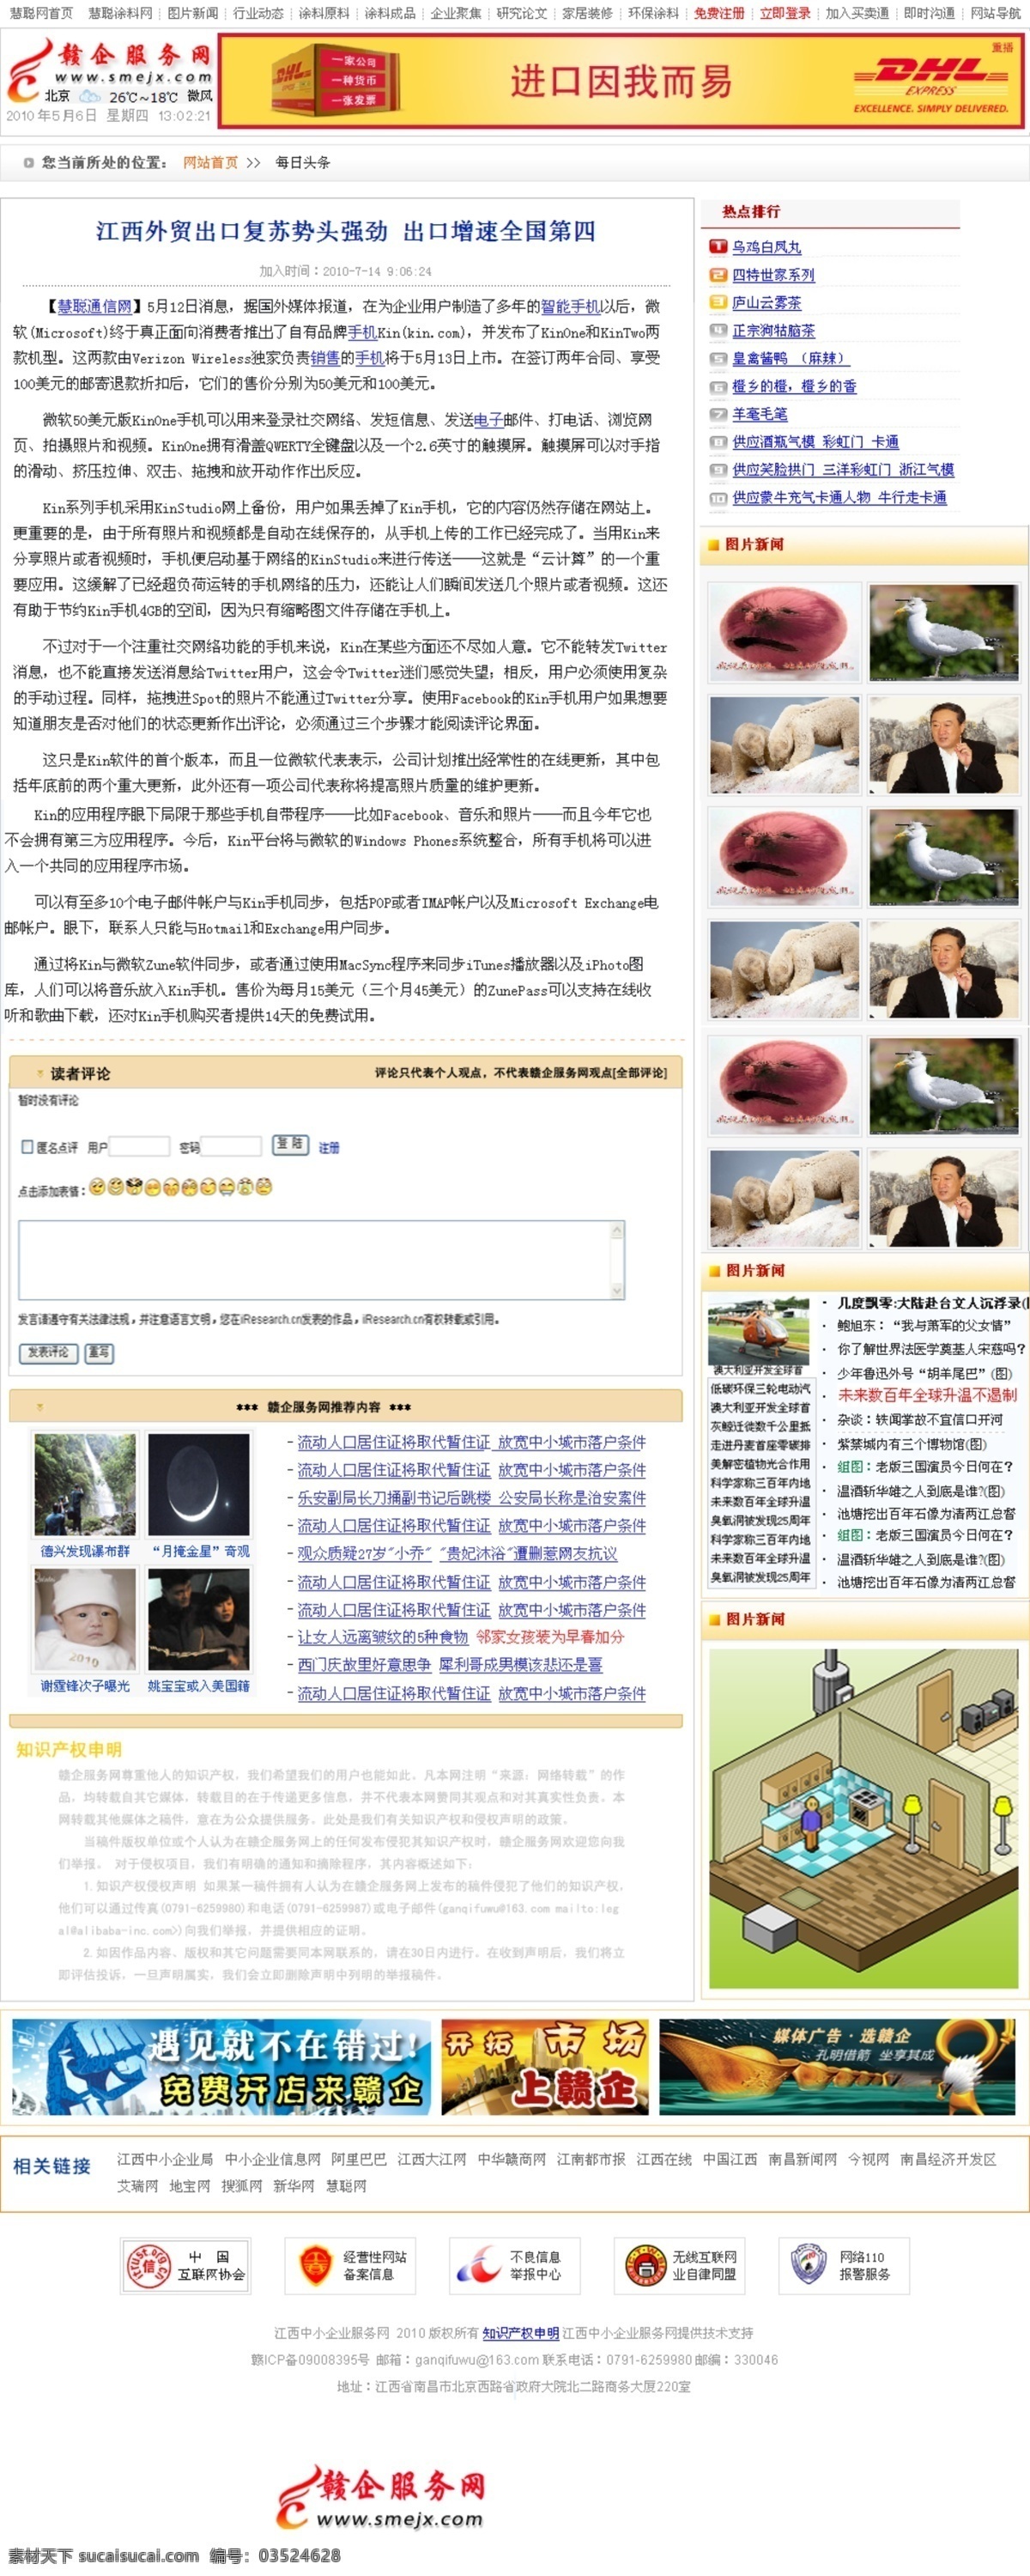 电子商务 三级 网页 效果 个人博客模板 广告图片 网页模板 源文件 中文模版 网页素材